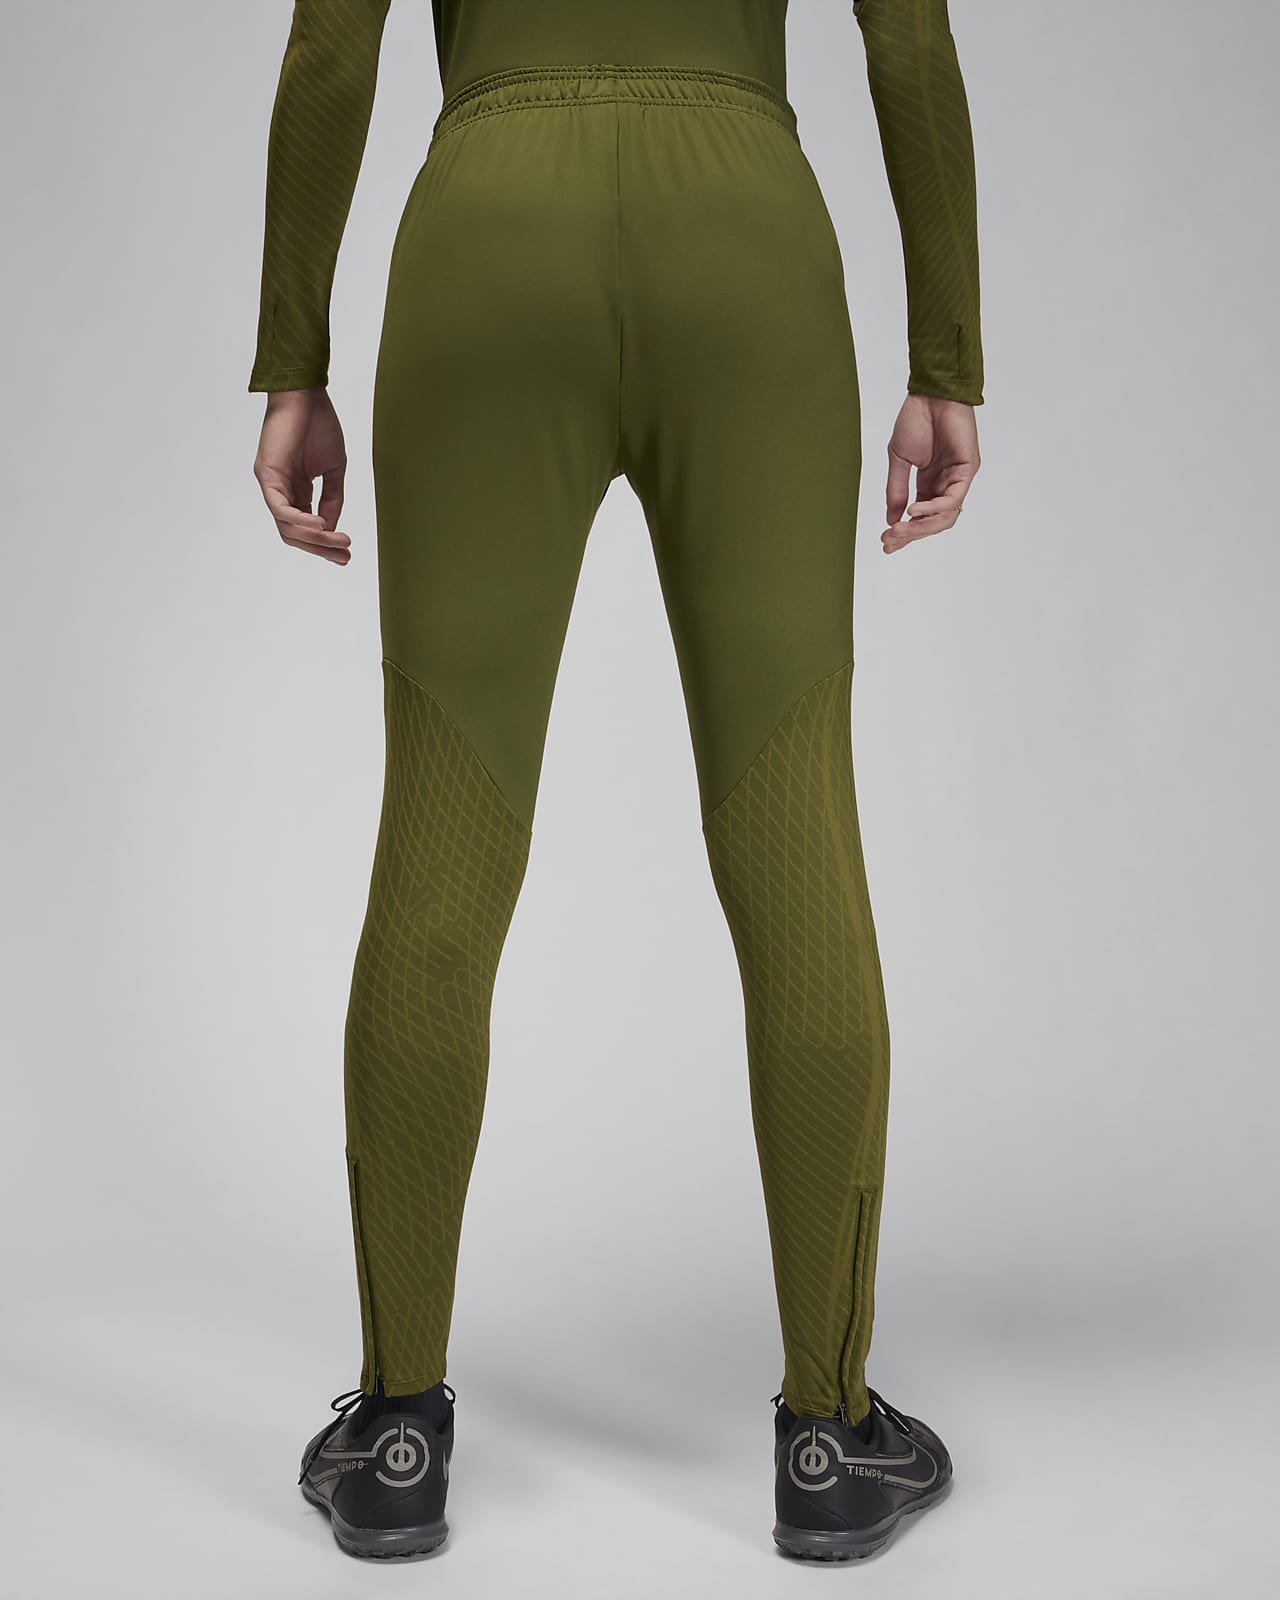 Nike Australia Womens Strike Dri-FIT Knit Football Pants Green XL